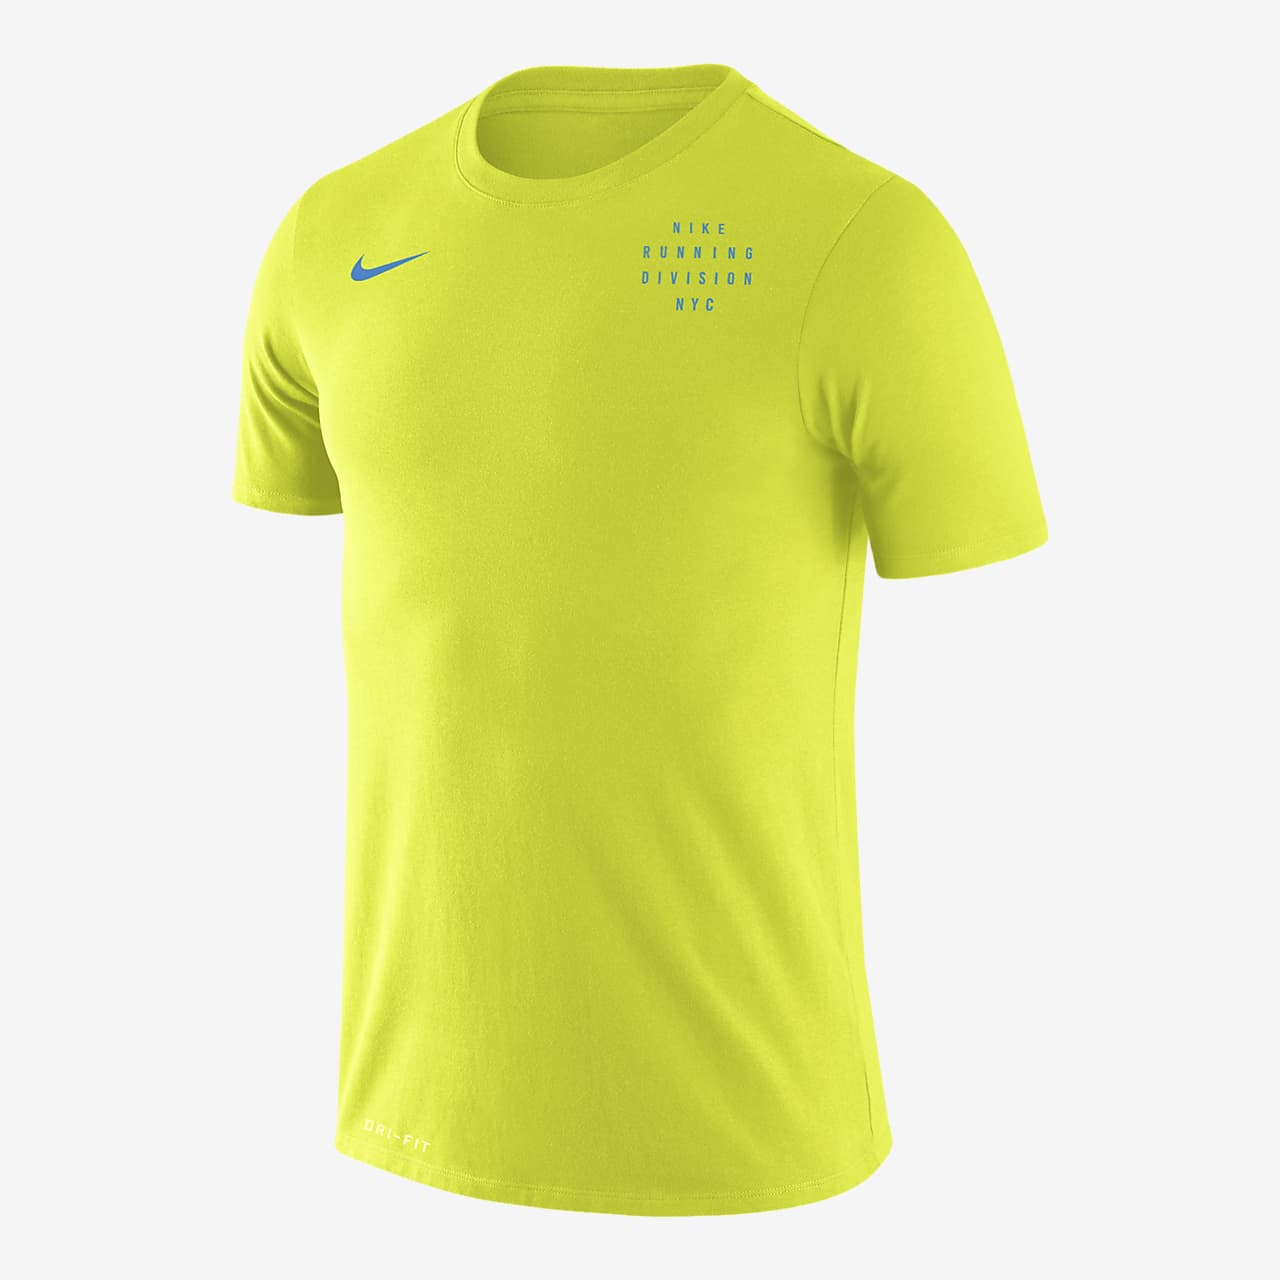 Le t-shirt Nike Legend